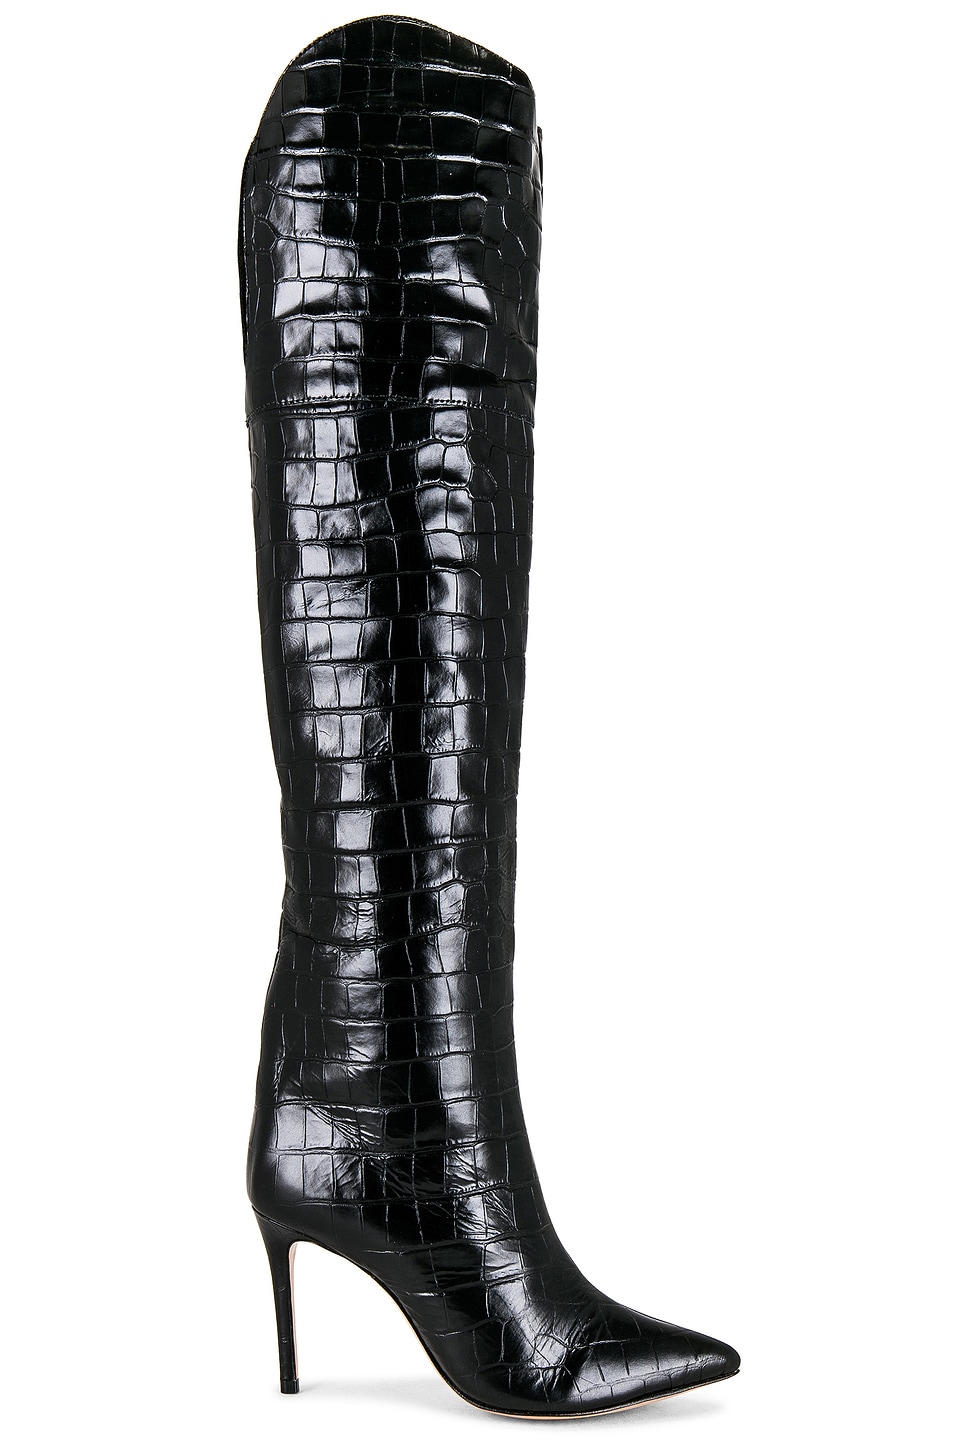 Schutz Maryana Block Crocodile-Embossed Leather Boot